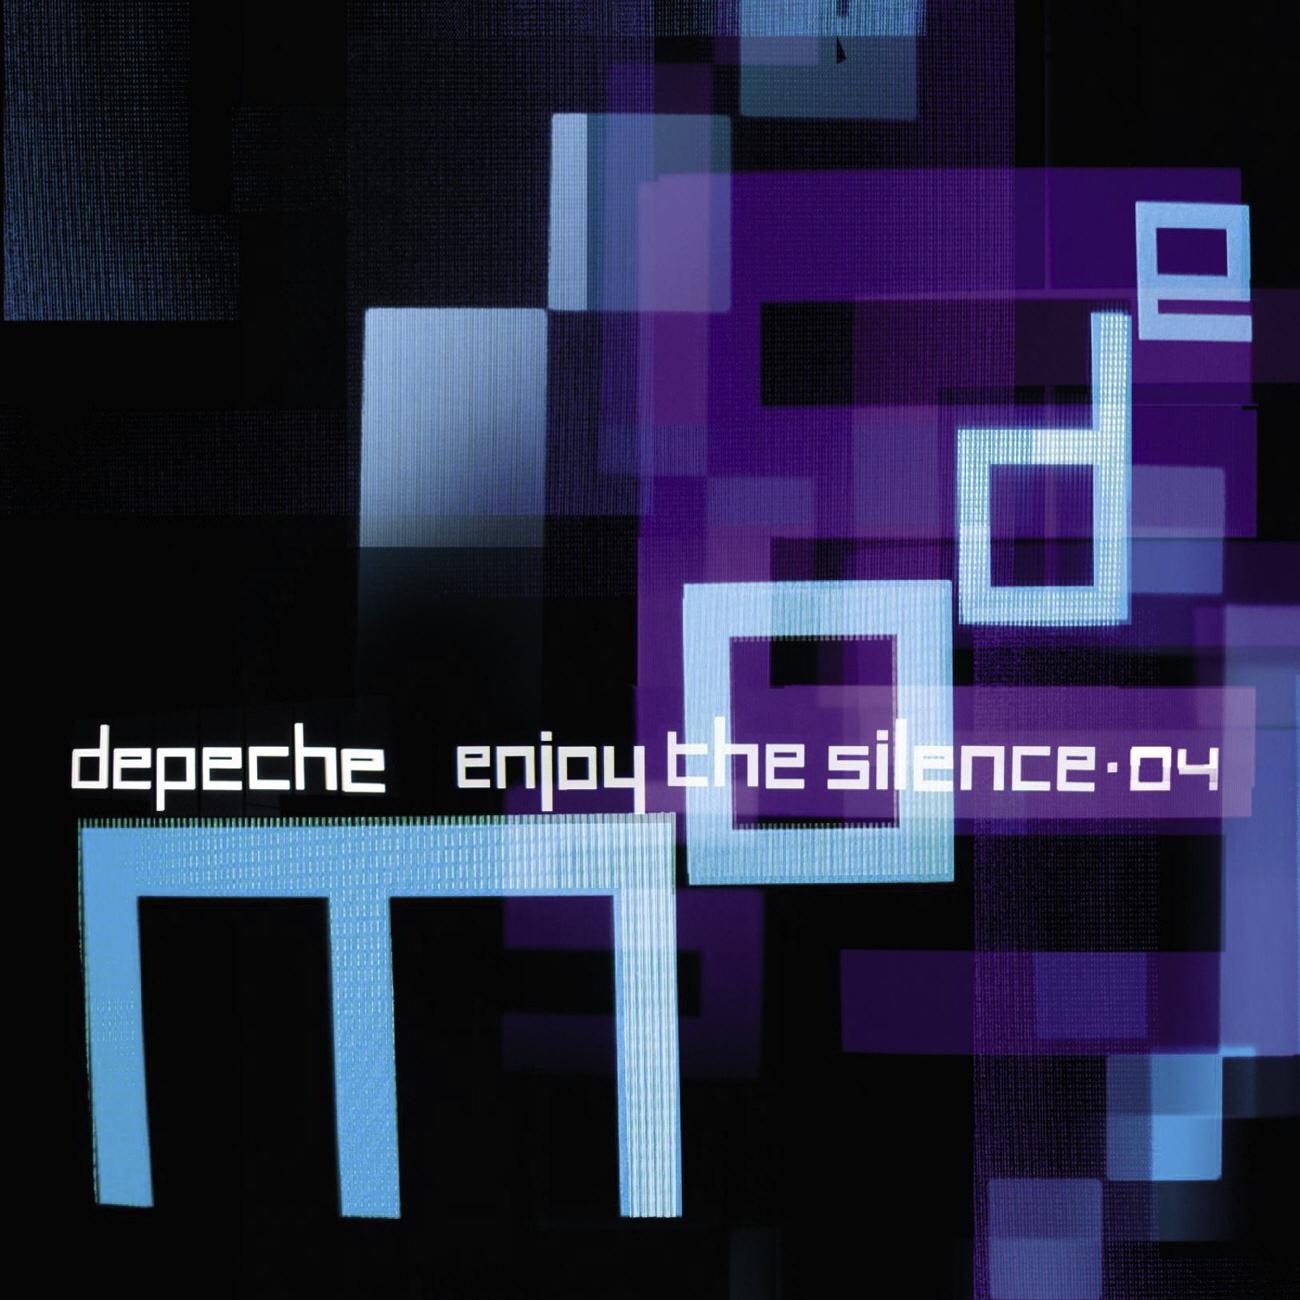 Enjoy The Silence 04专辑